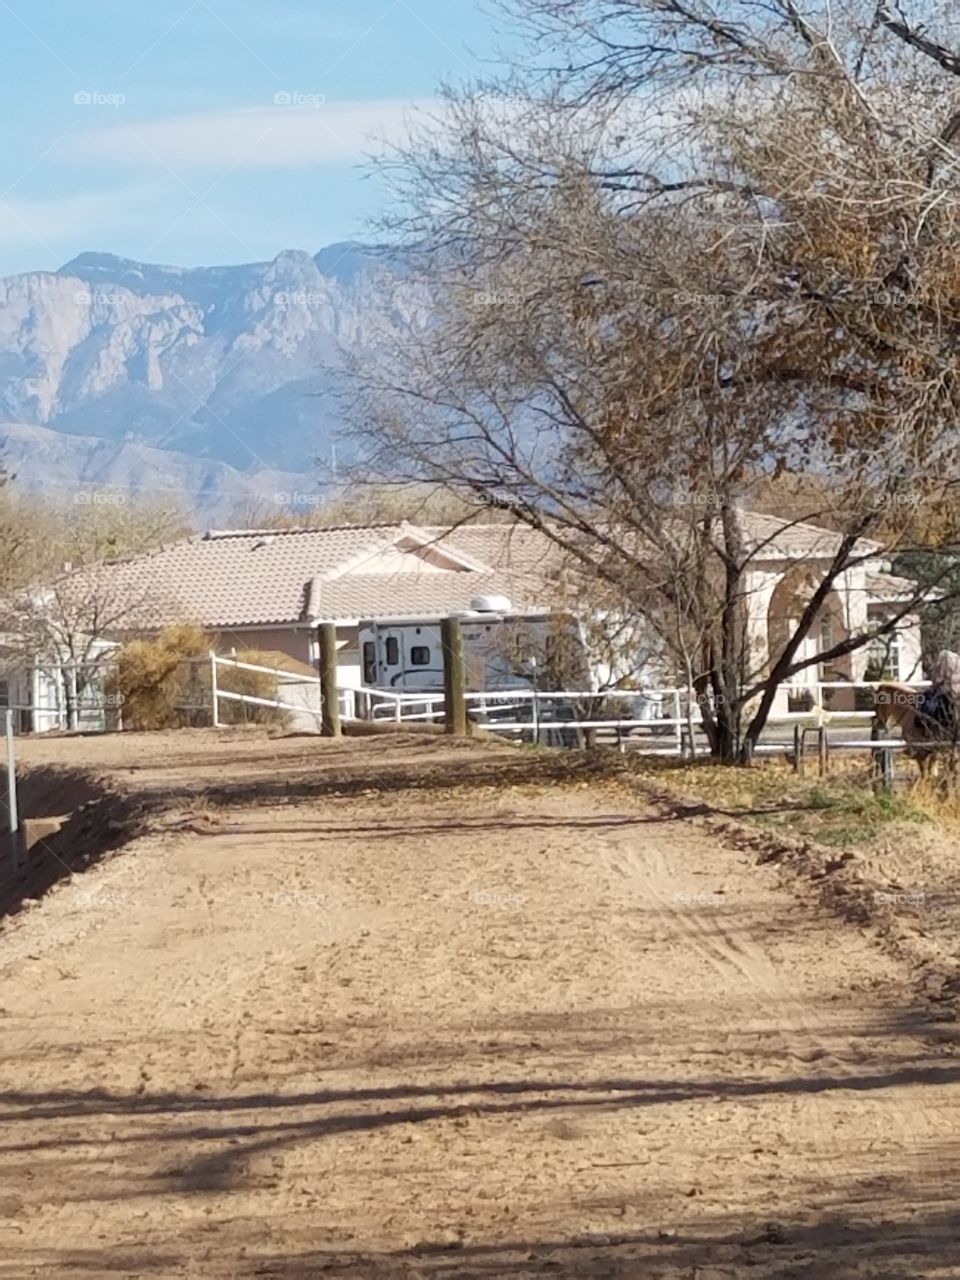 Southwest Horse Ranch